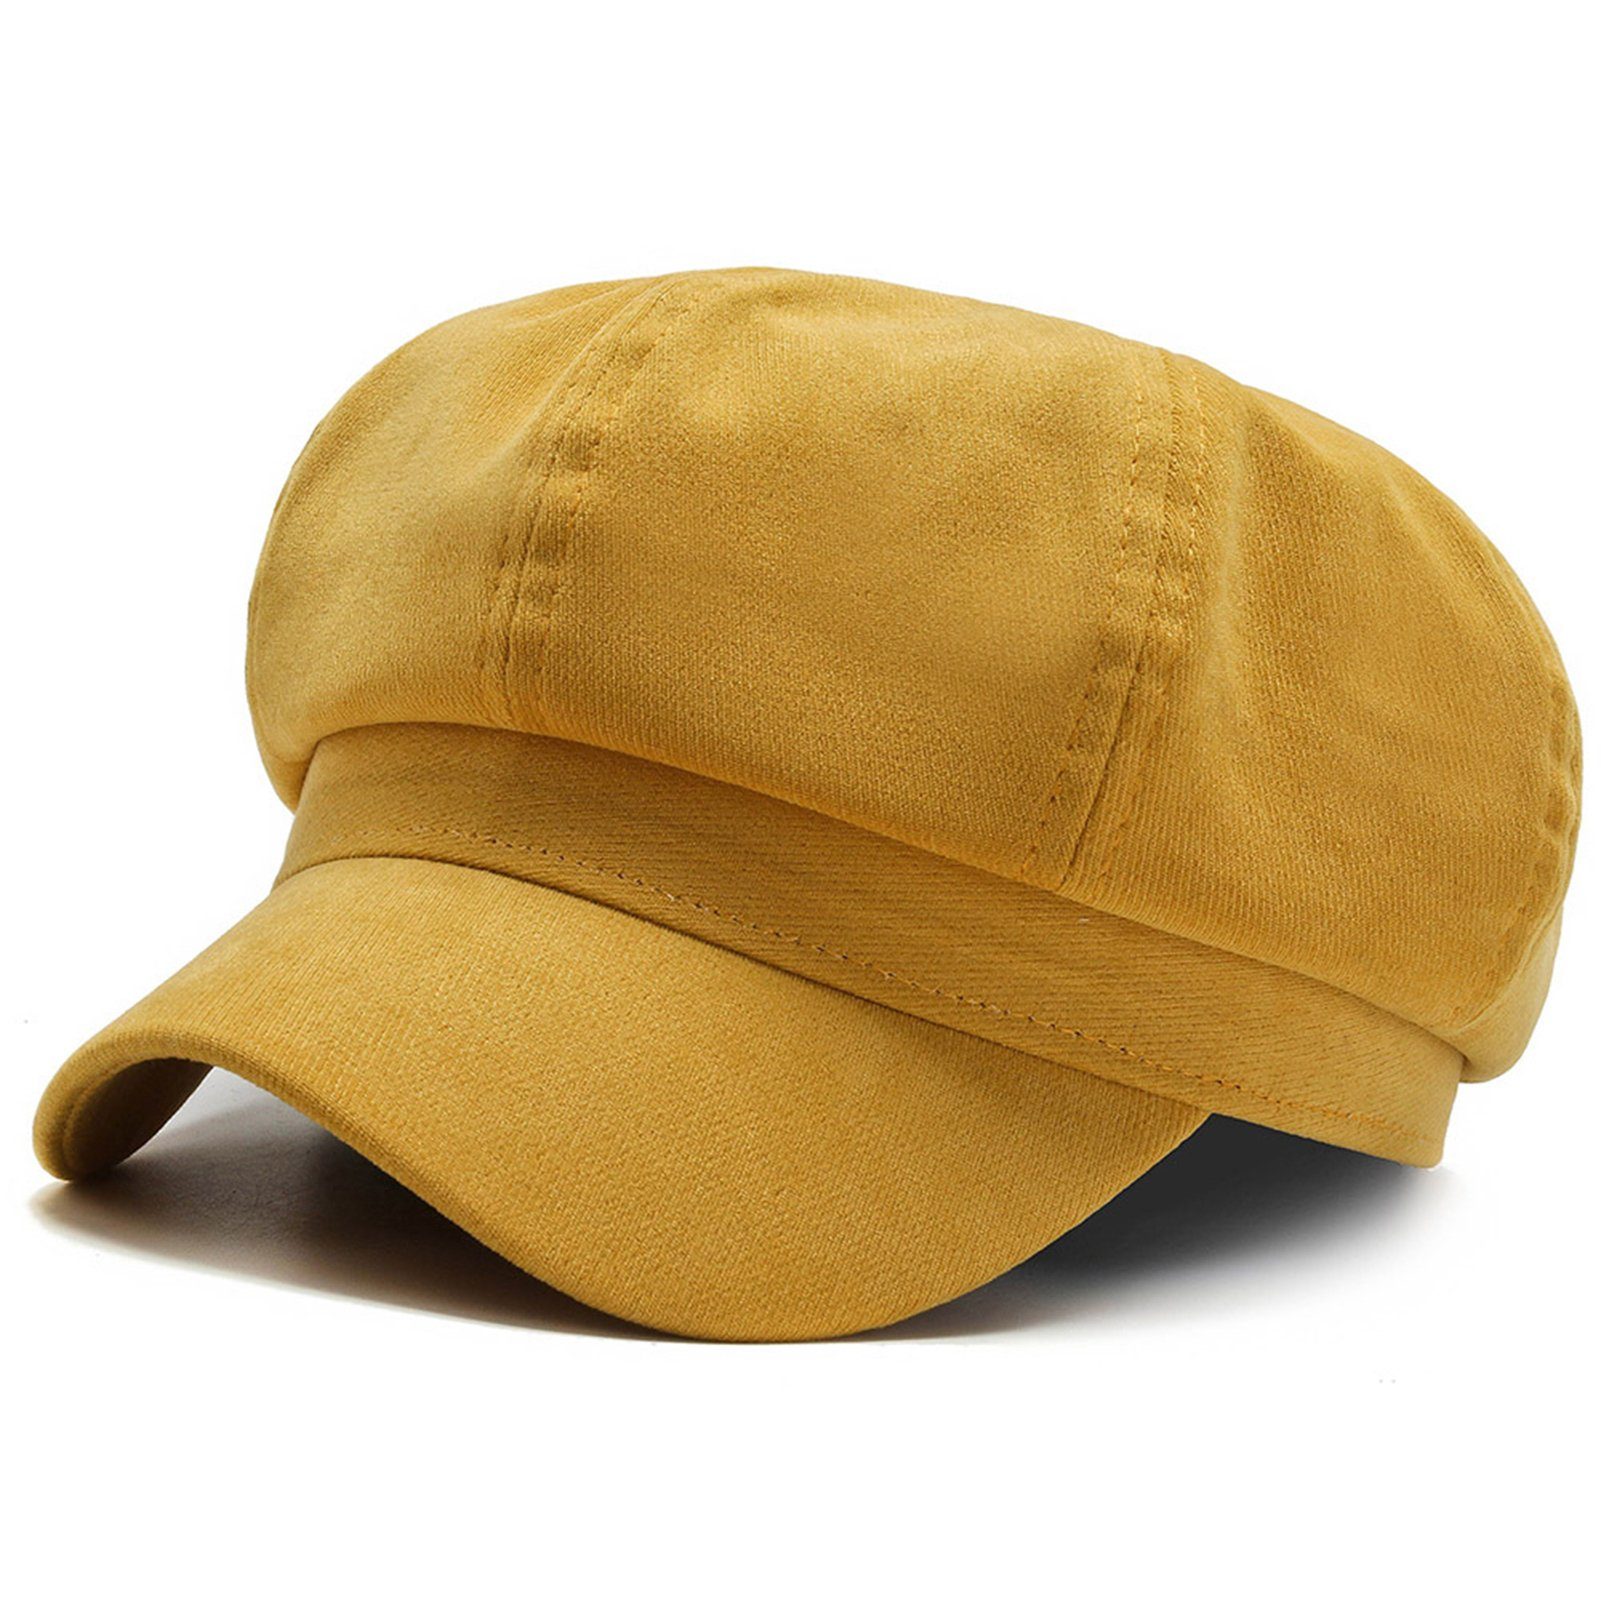 Blusmart Baskenmütze Modischer Hut, Mehrzweck-Freizeit-Baskenmütze, Tragbar Gelb